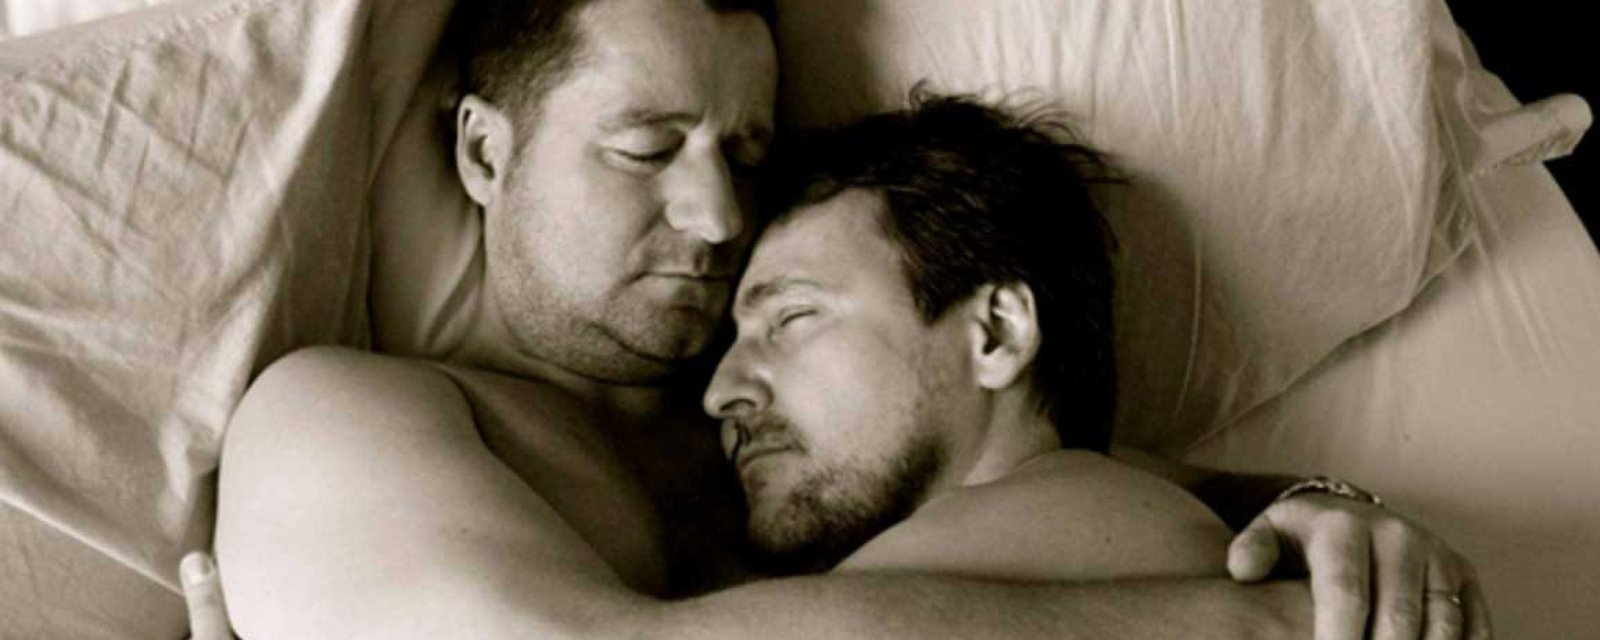 Une photo sensuelle de Guy A. Lepage et Dany Turcotte leur cause une mauvaise surprise!